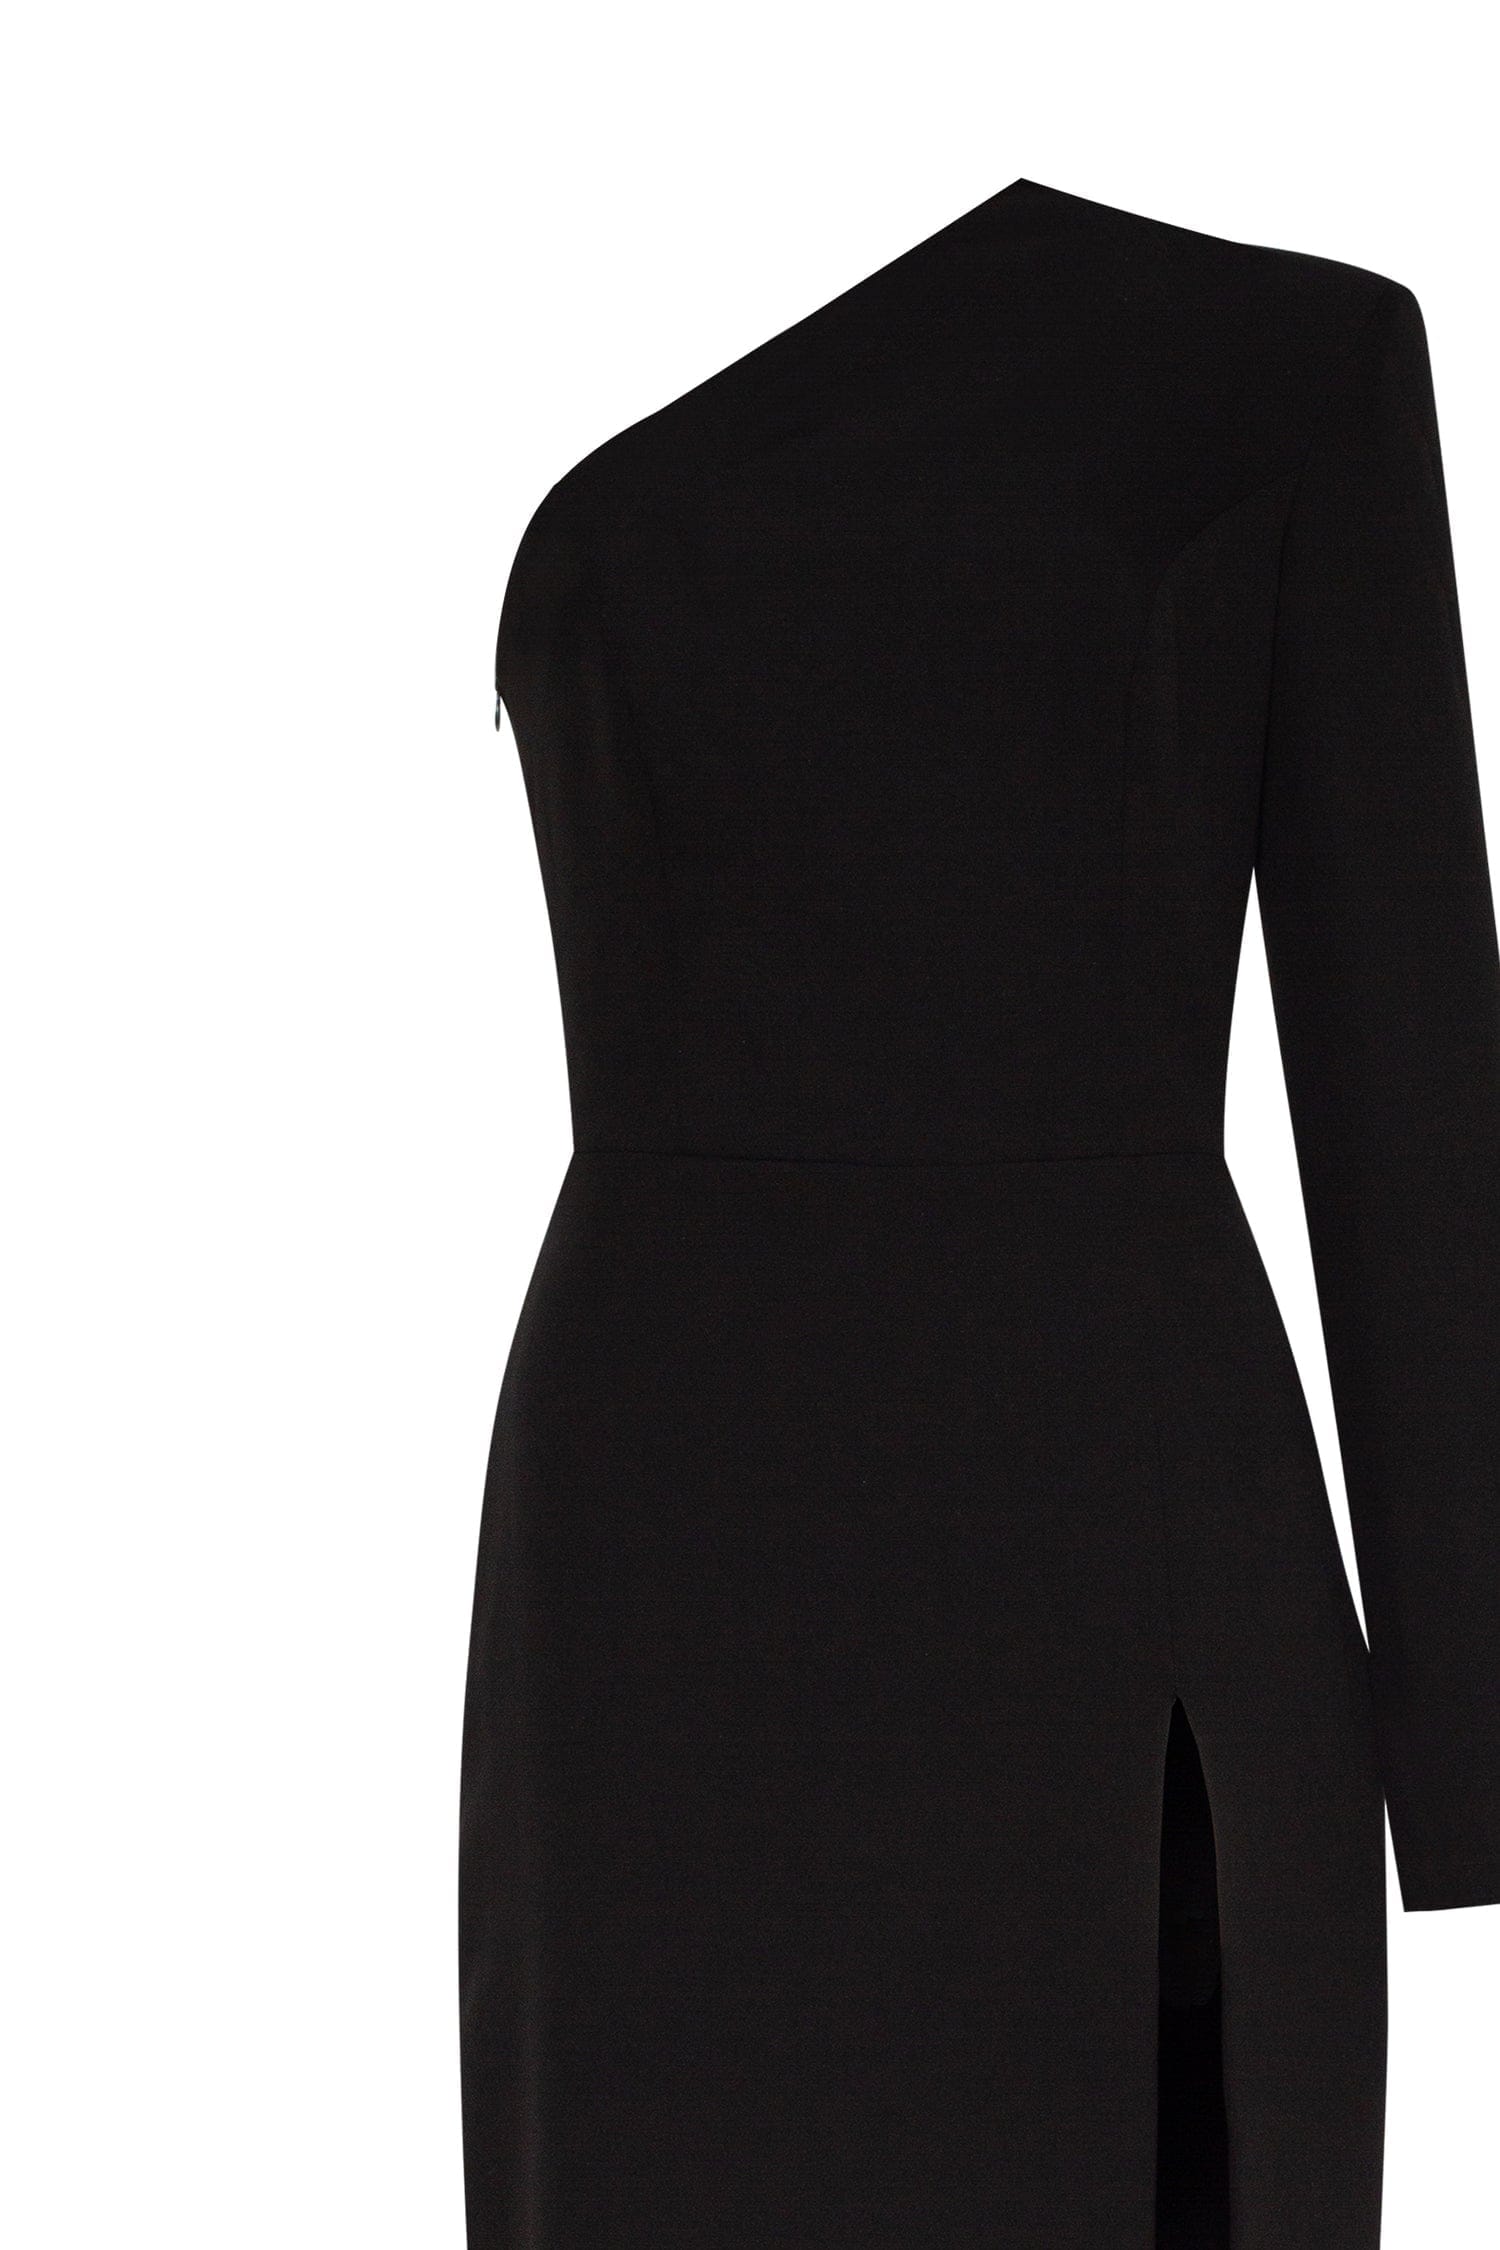 Black Long-sleeved dress with sharp shoulder cut - Milla